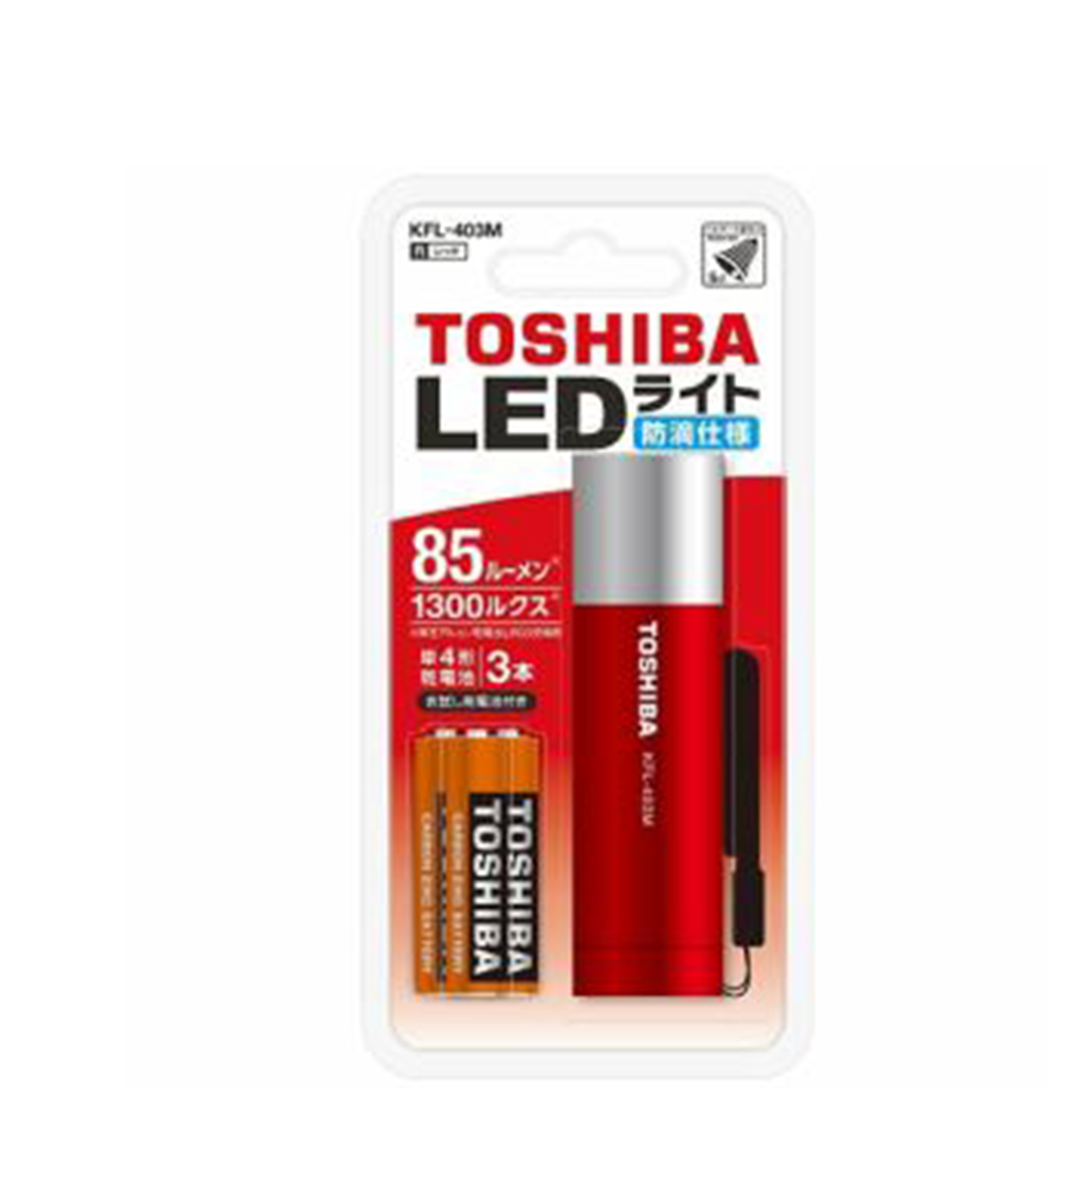 Toshiba Red LED Mini Light, KFL-403M(R)